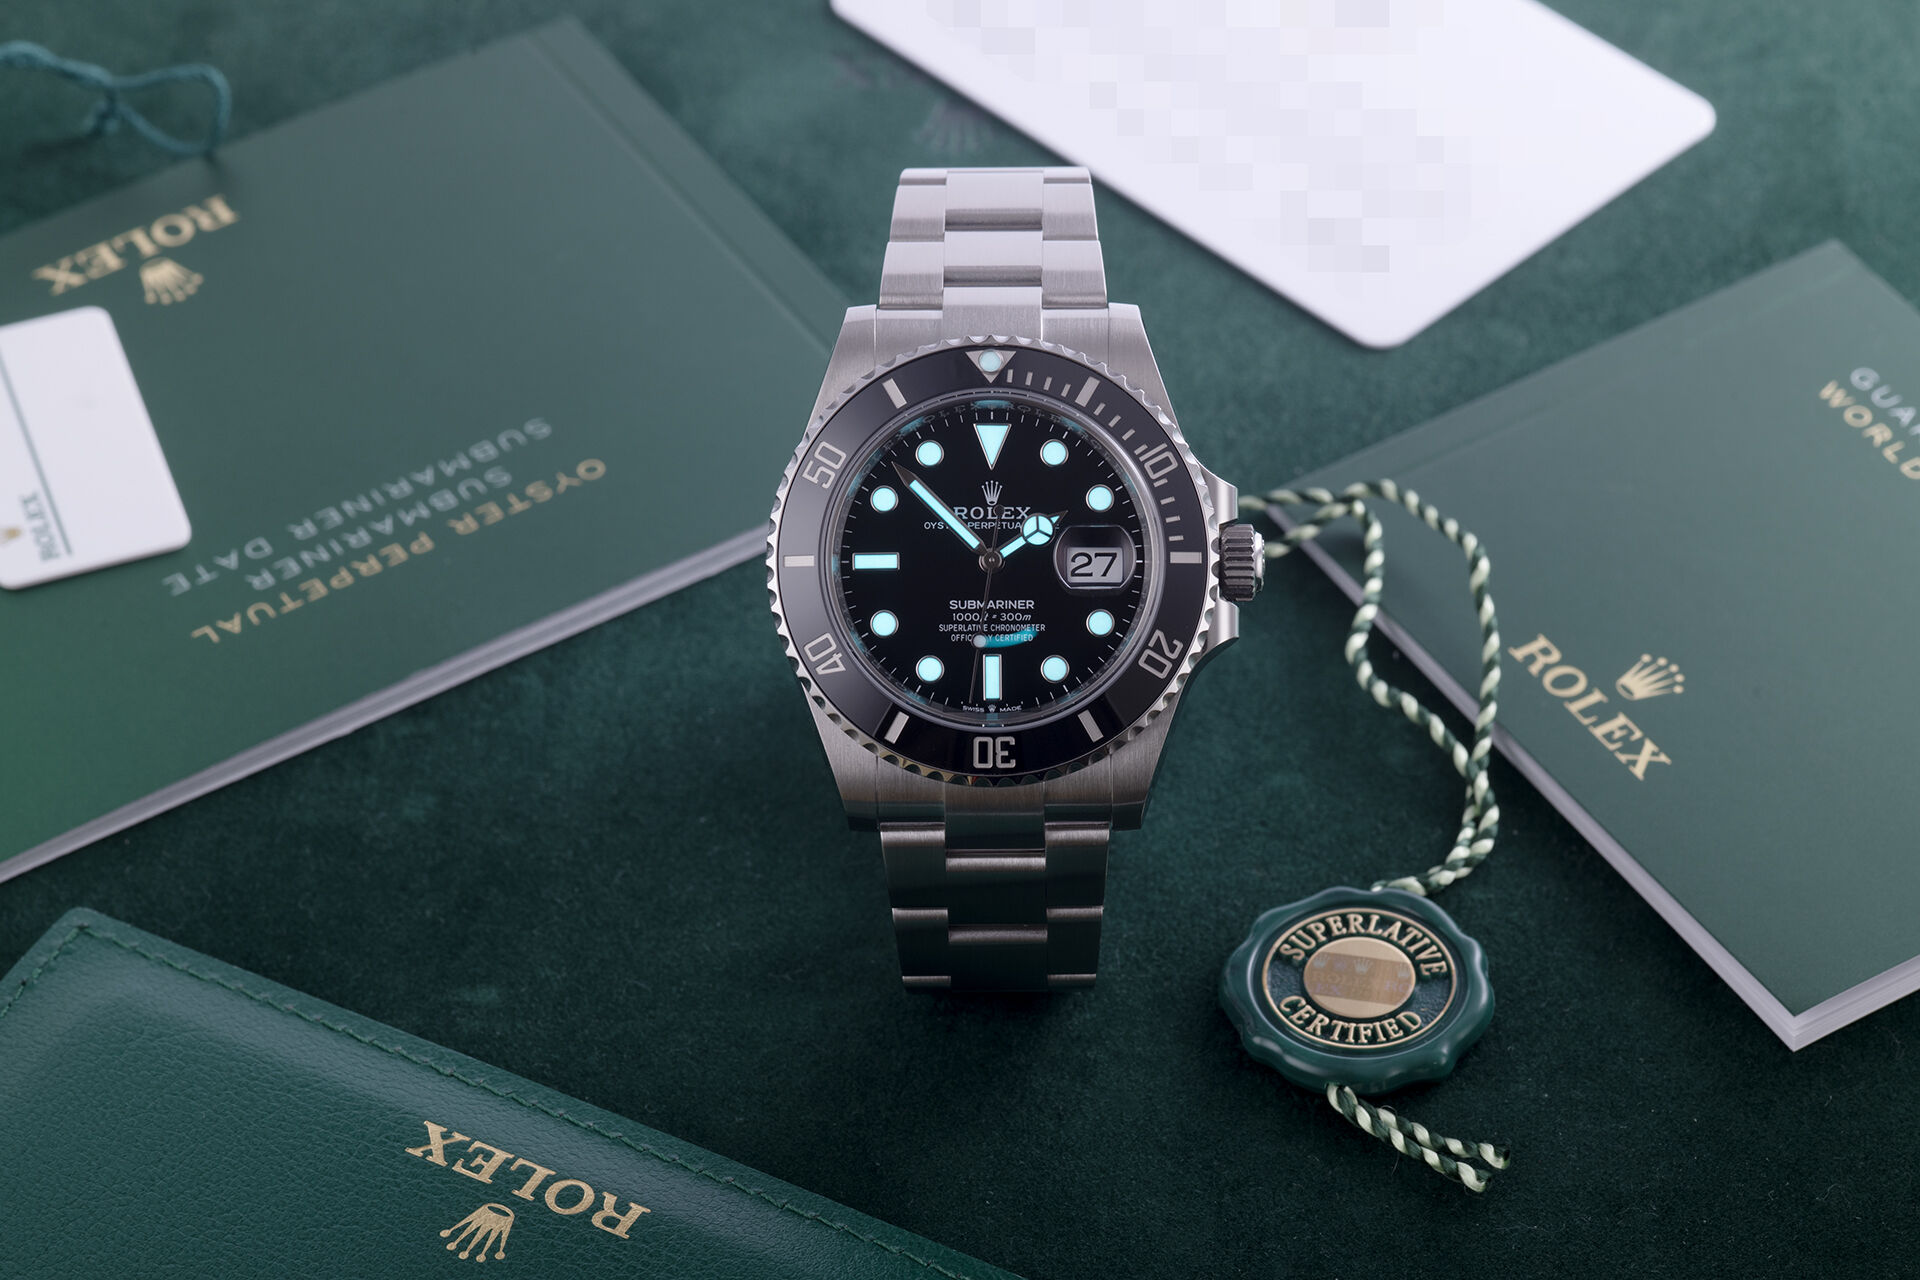 ref 126610LN | Brand New | Rolex Submariner Date